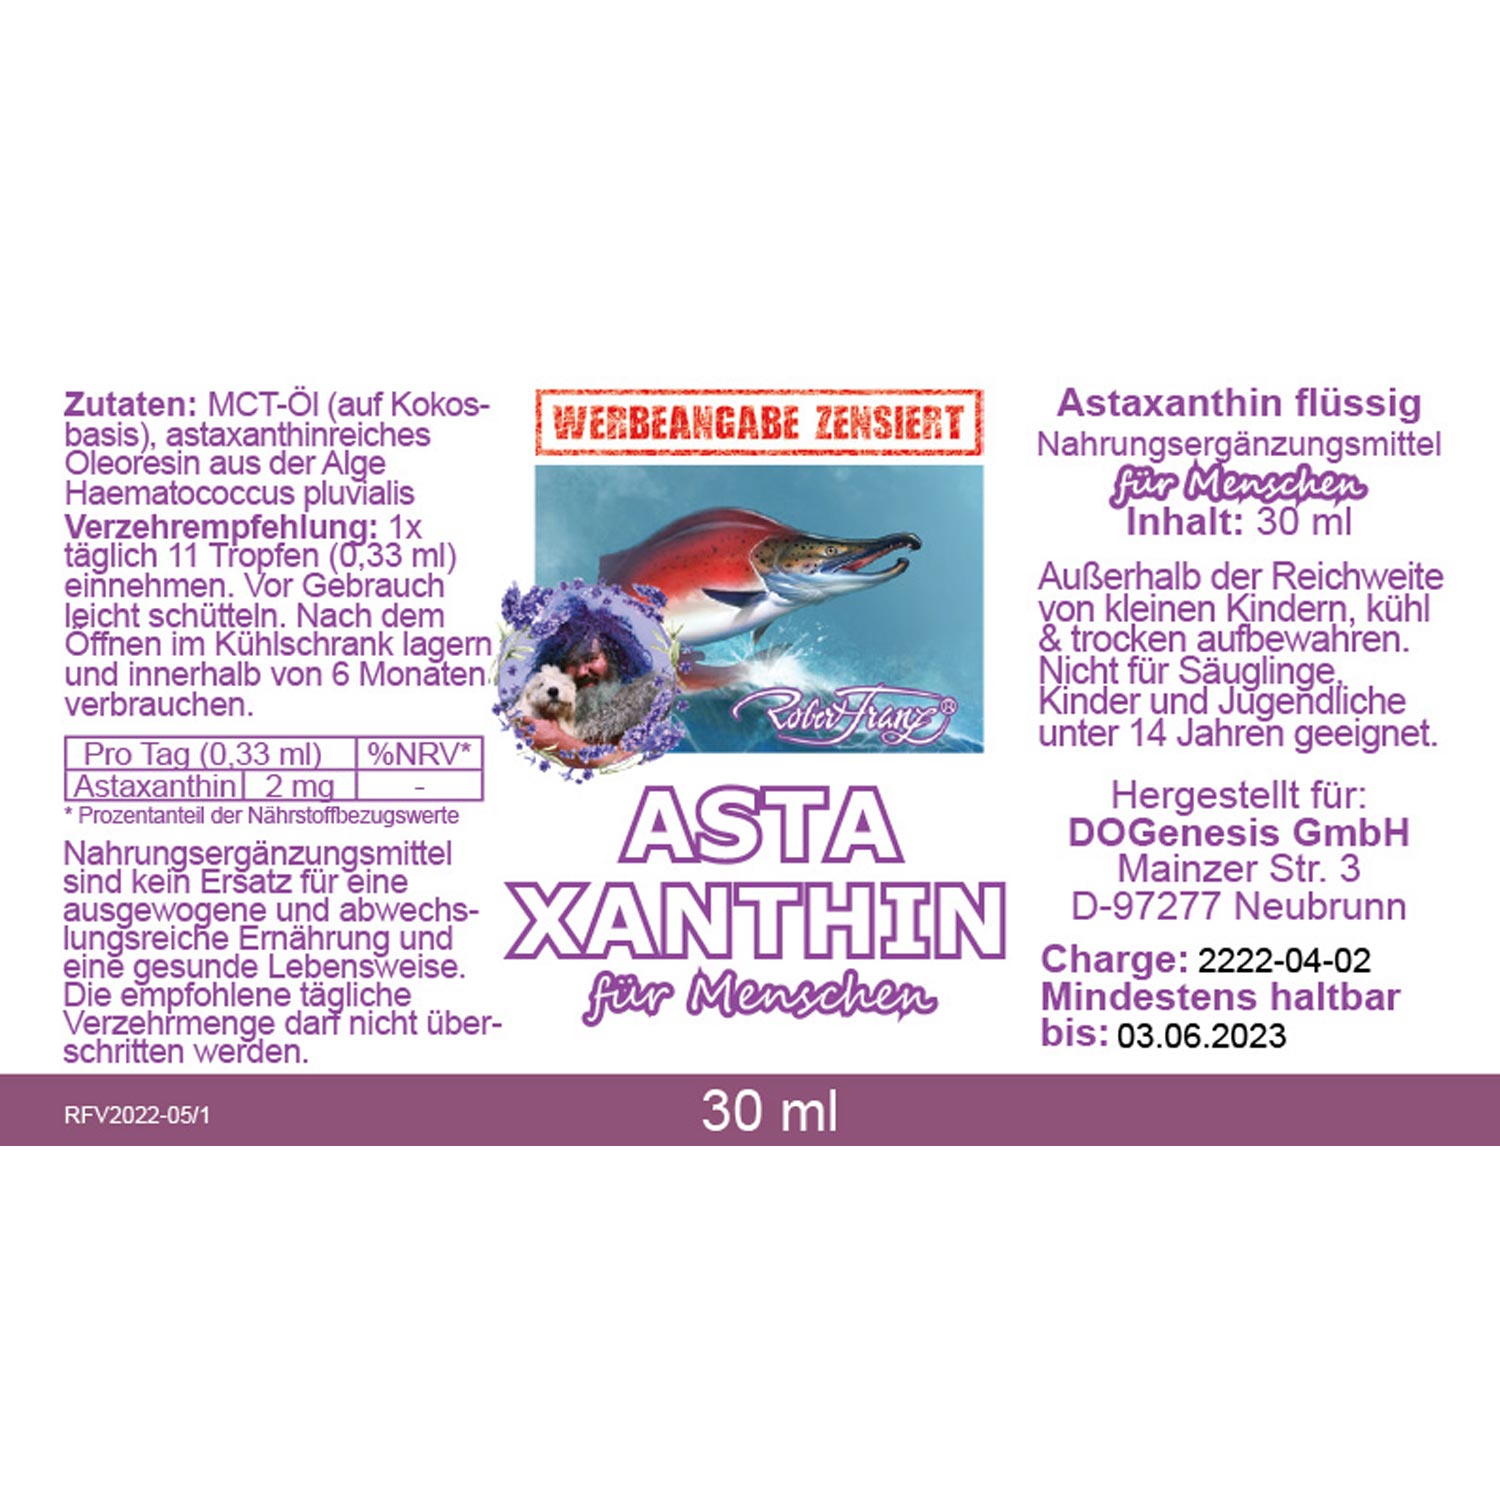 Astaxanthin von Robert Franz - Etikett